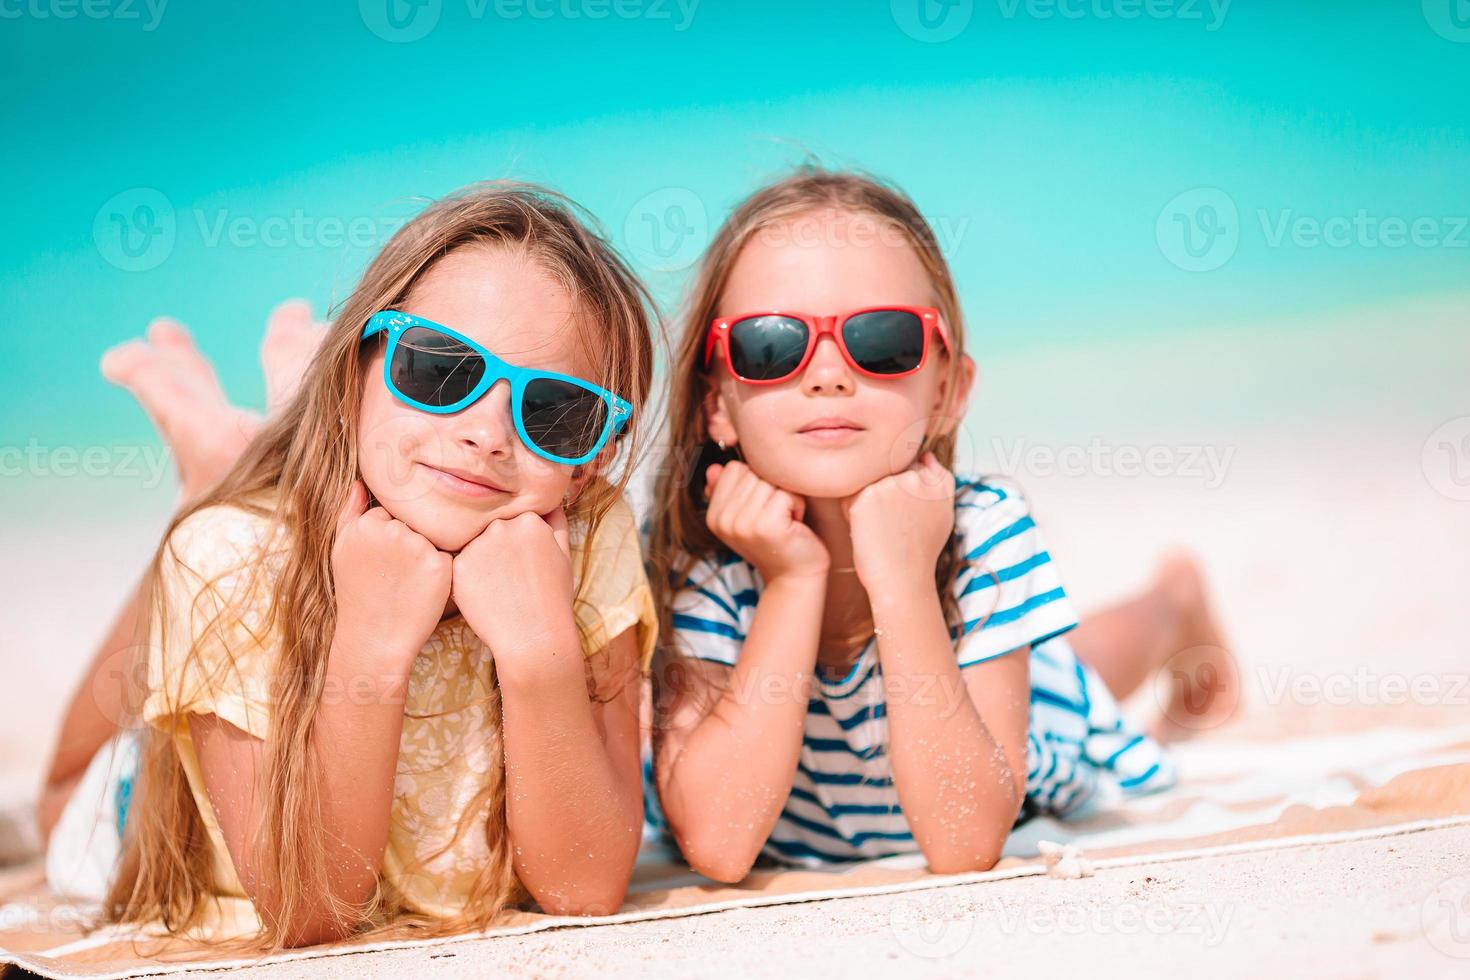 mignonnes petites filles à la plage tropicale ensemble. adorables petites soeurs au bord de la mer pendant les vacances d'été photo